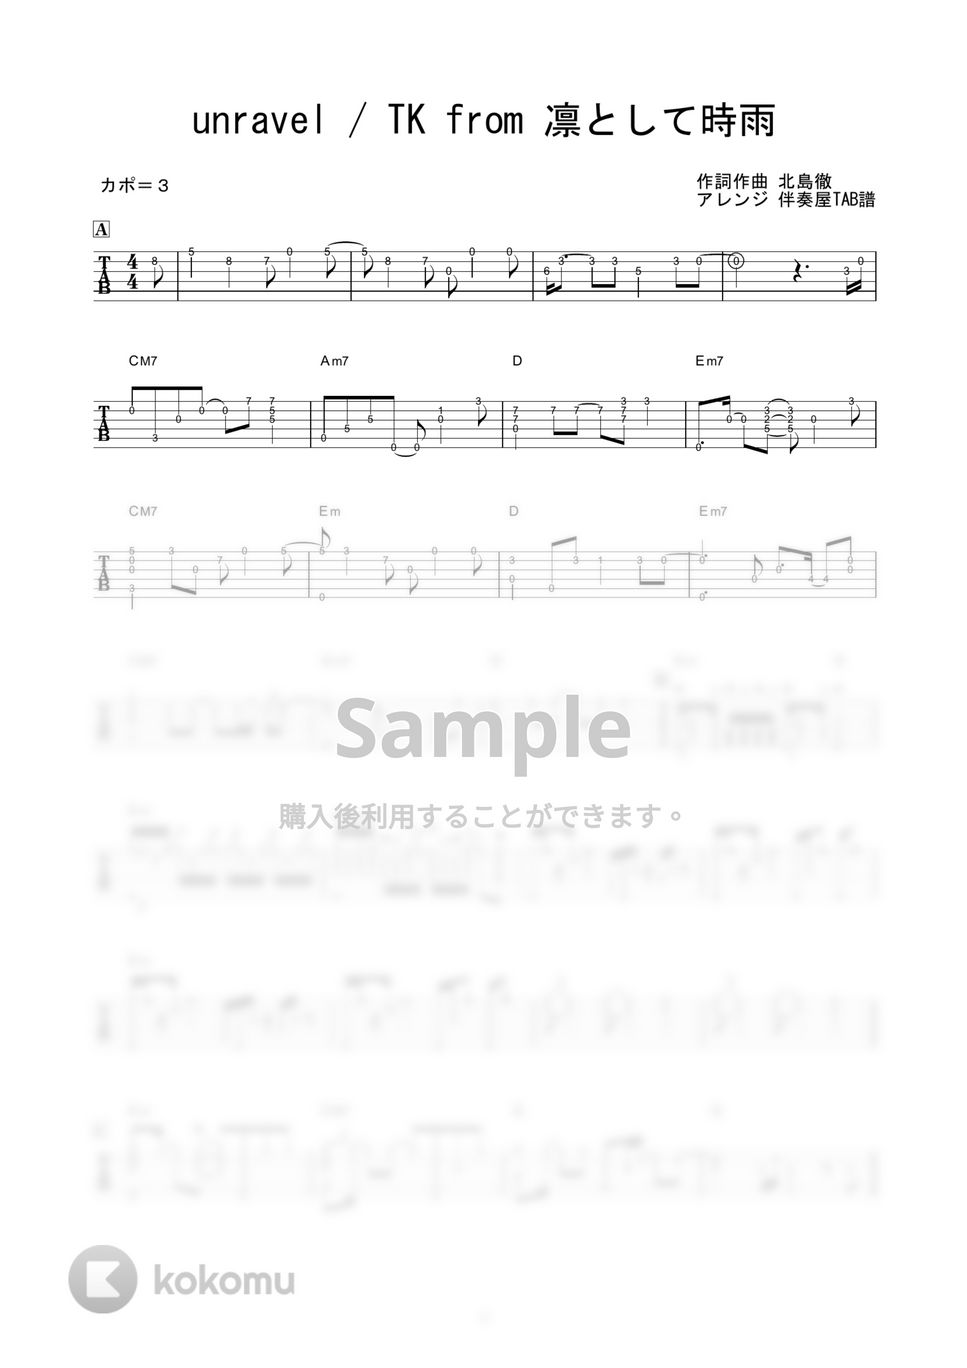 東京喰種 - unravel (ソロギター) by 伴奏屋TAB譜